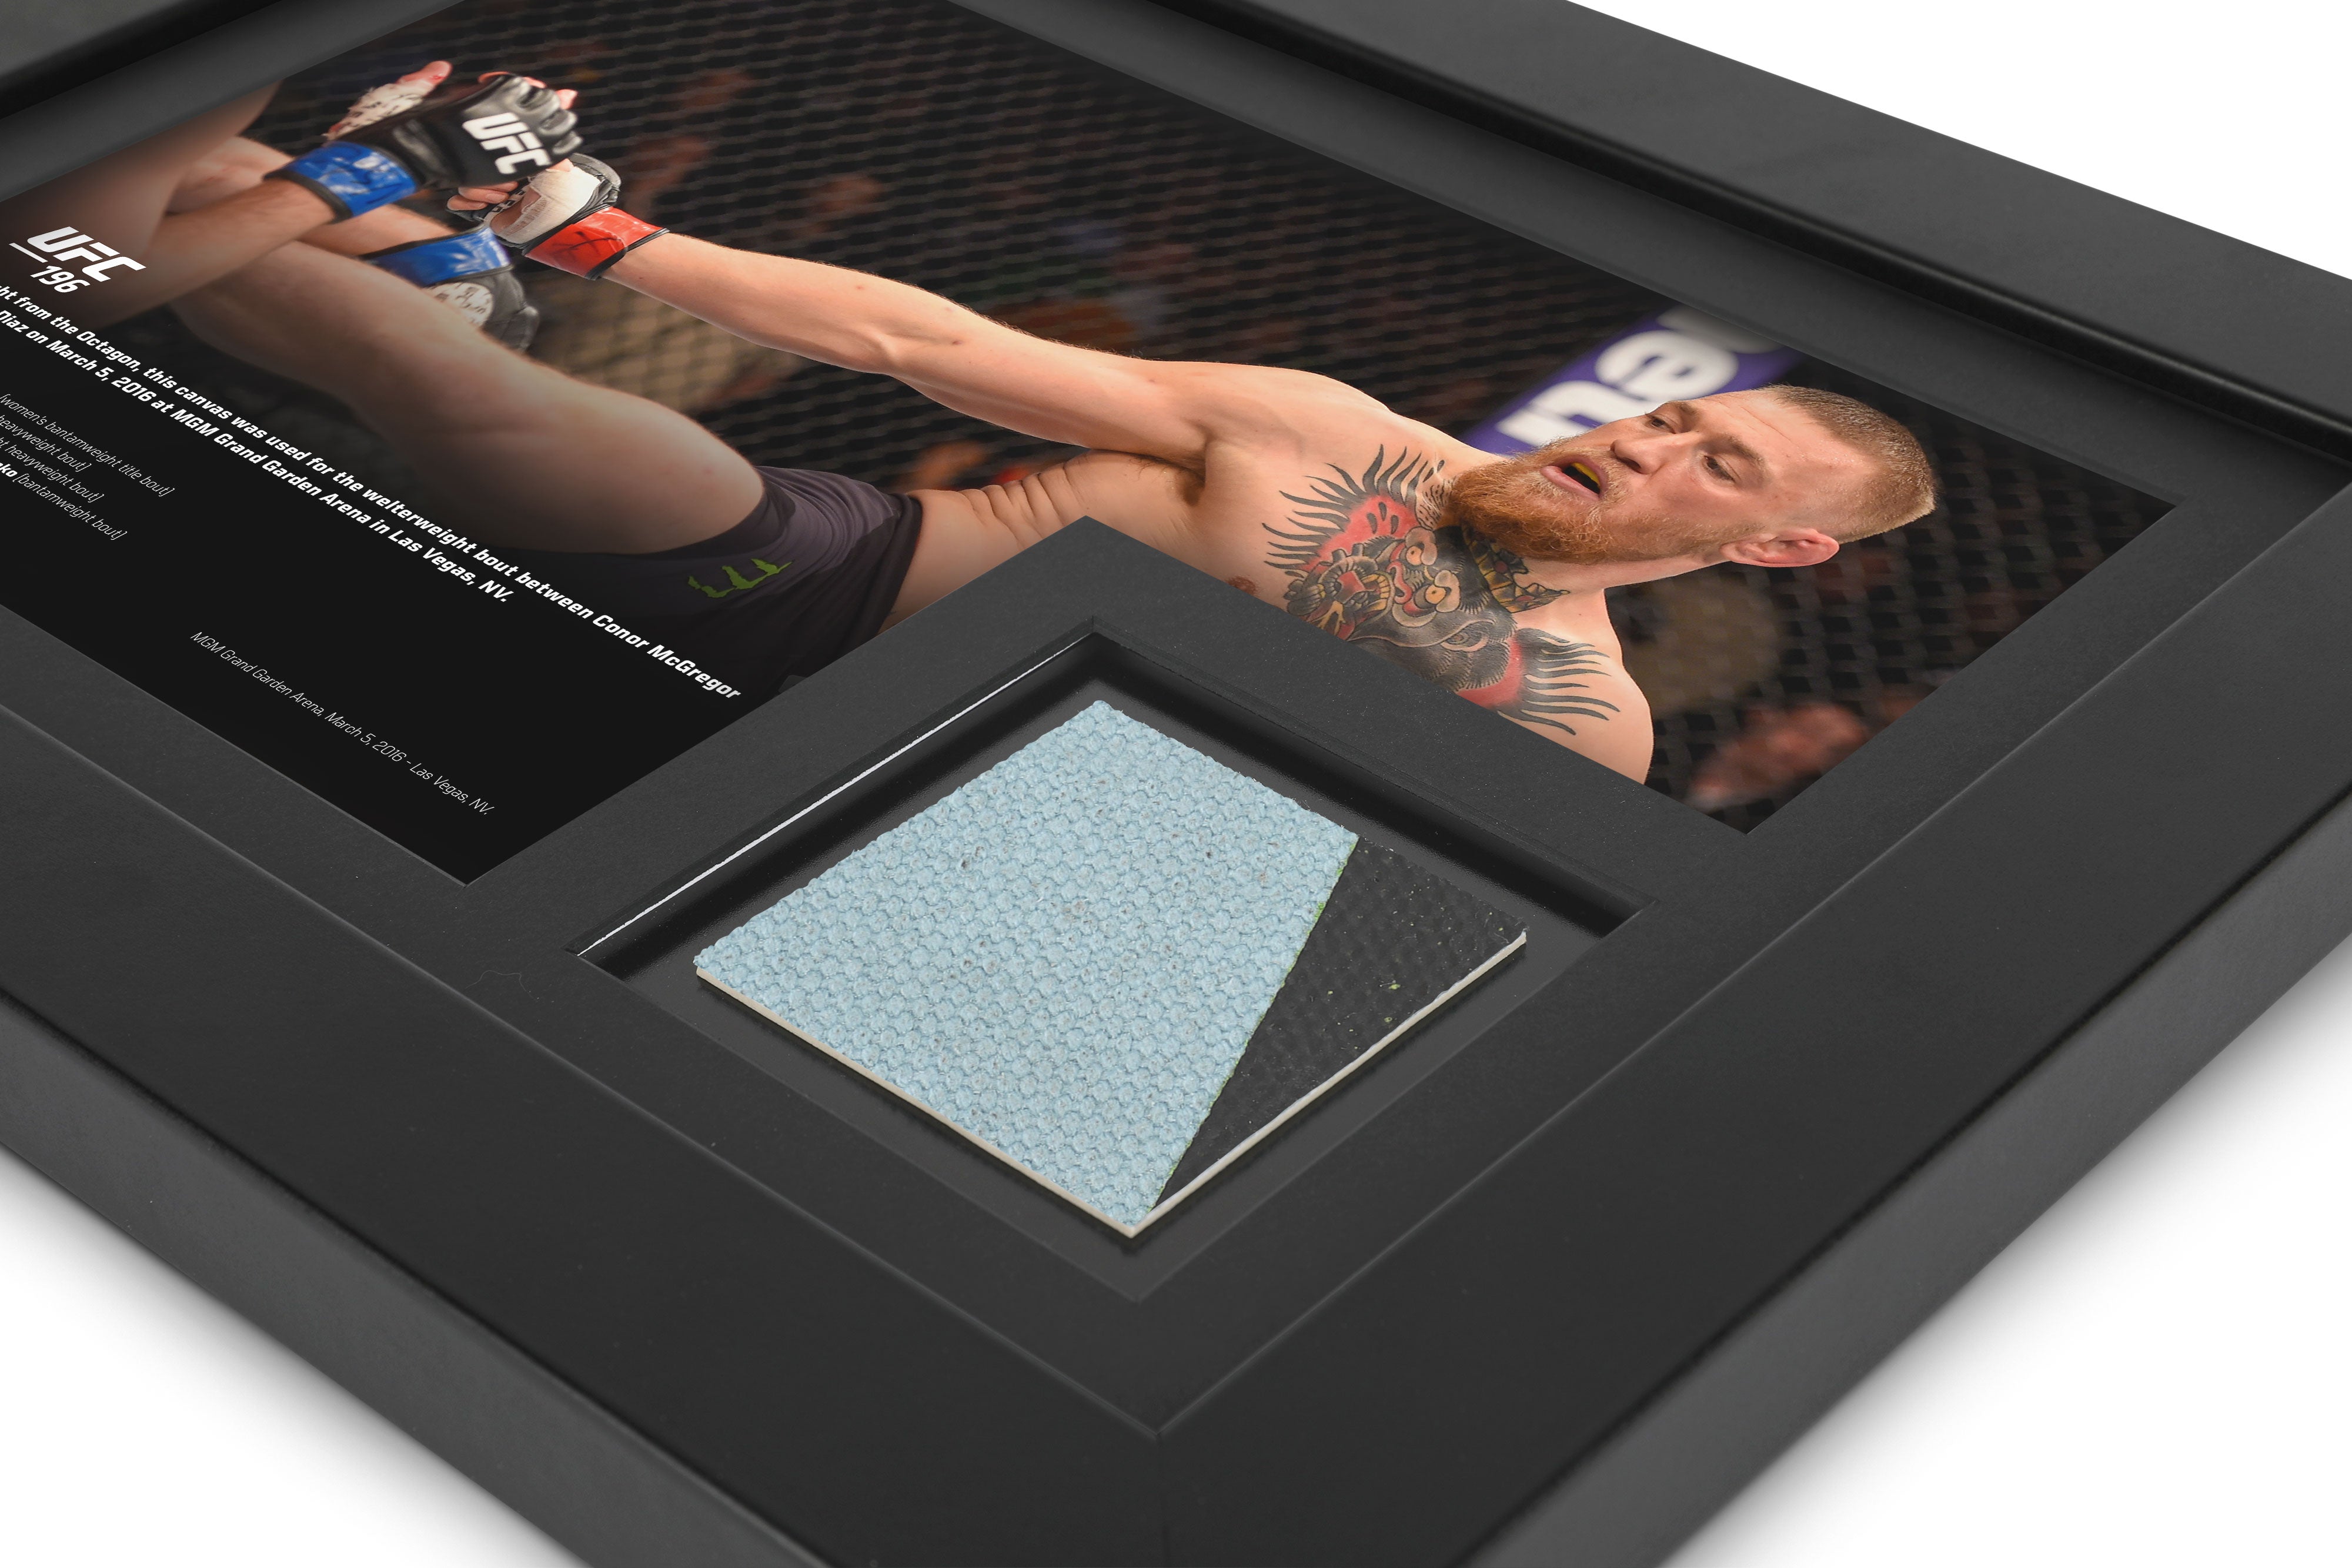 Conor McGregor UFC 196 Canvas & Photo